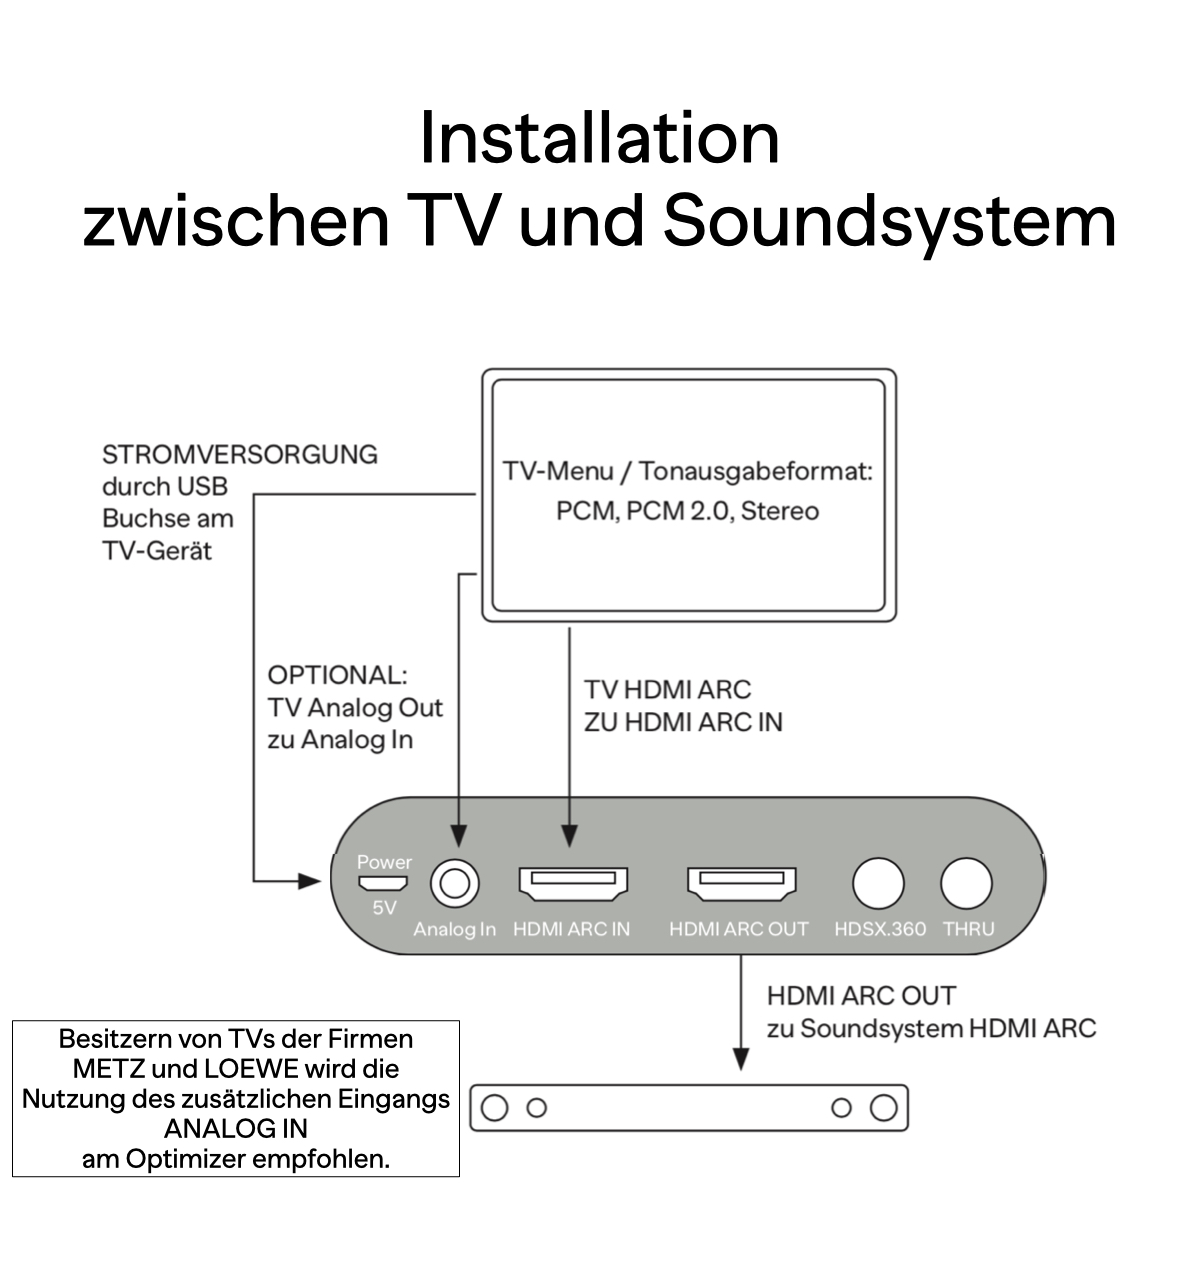 HDSX TV cm Optimizer Sound 5,3 HDMI Klangverstärker ARC